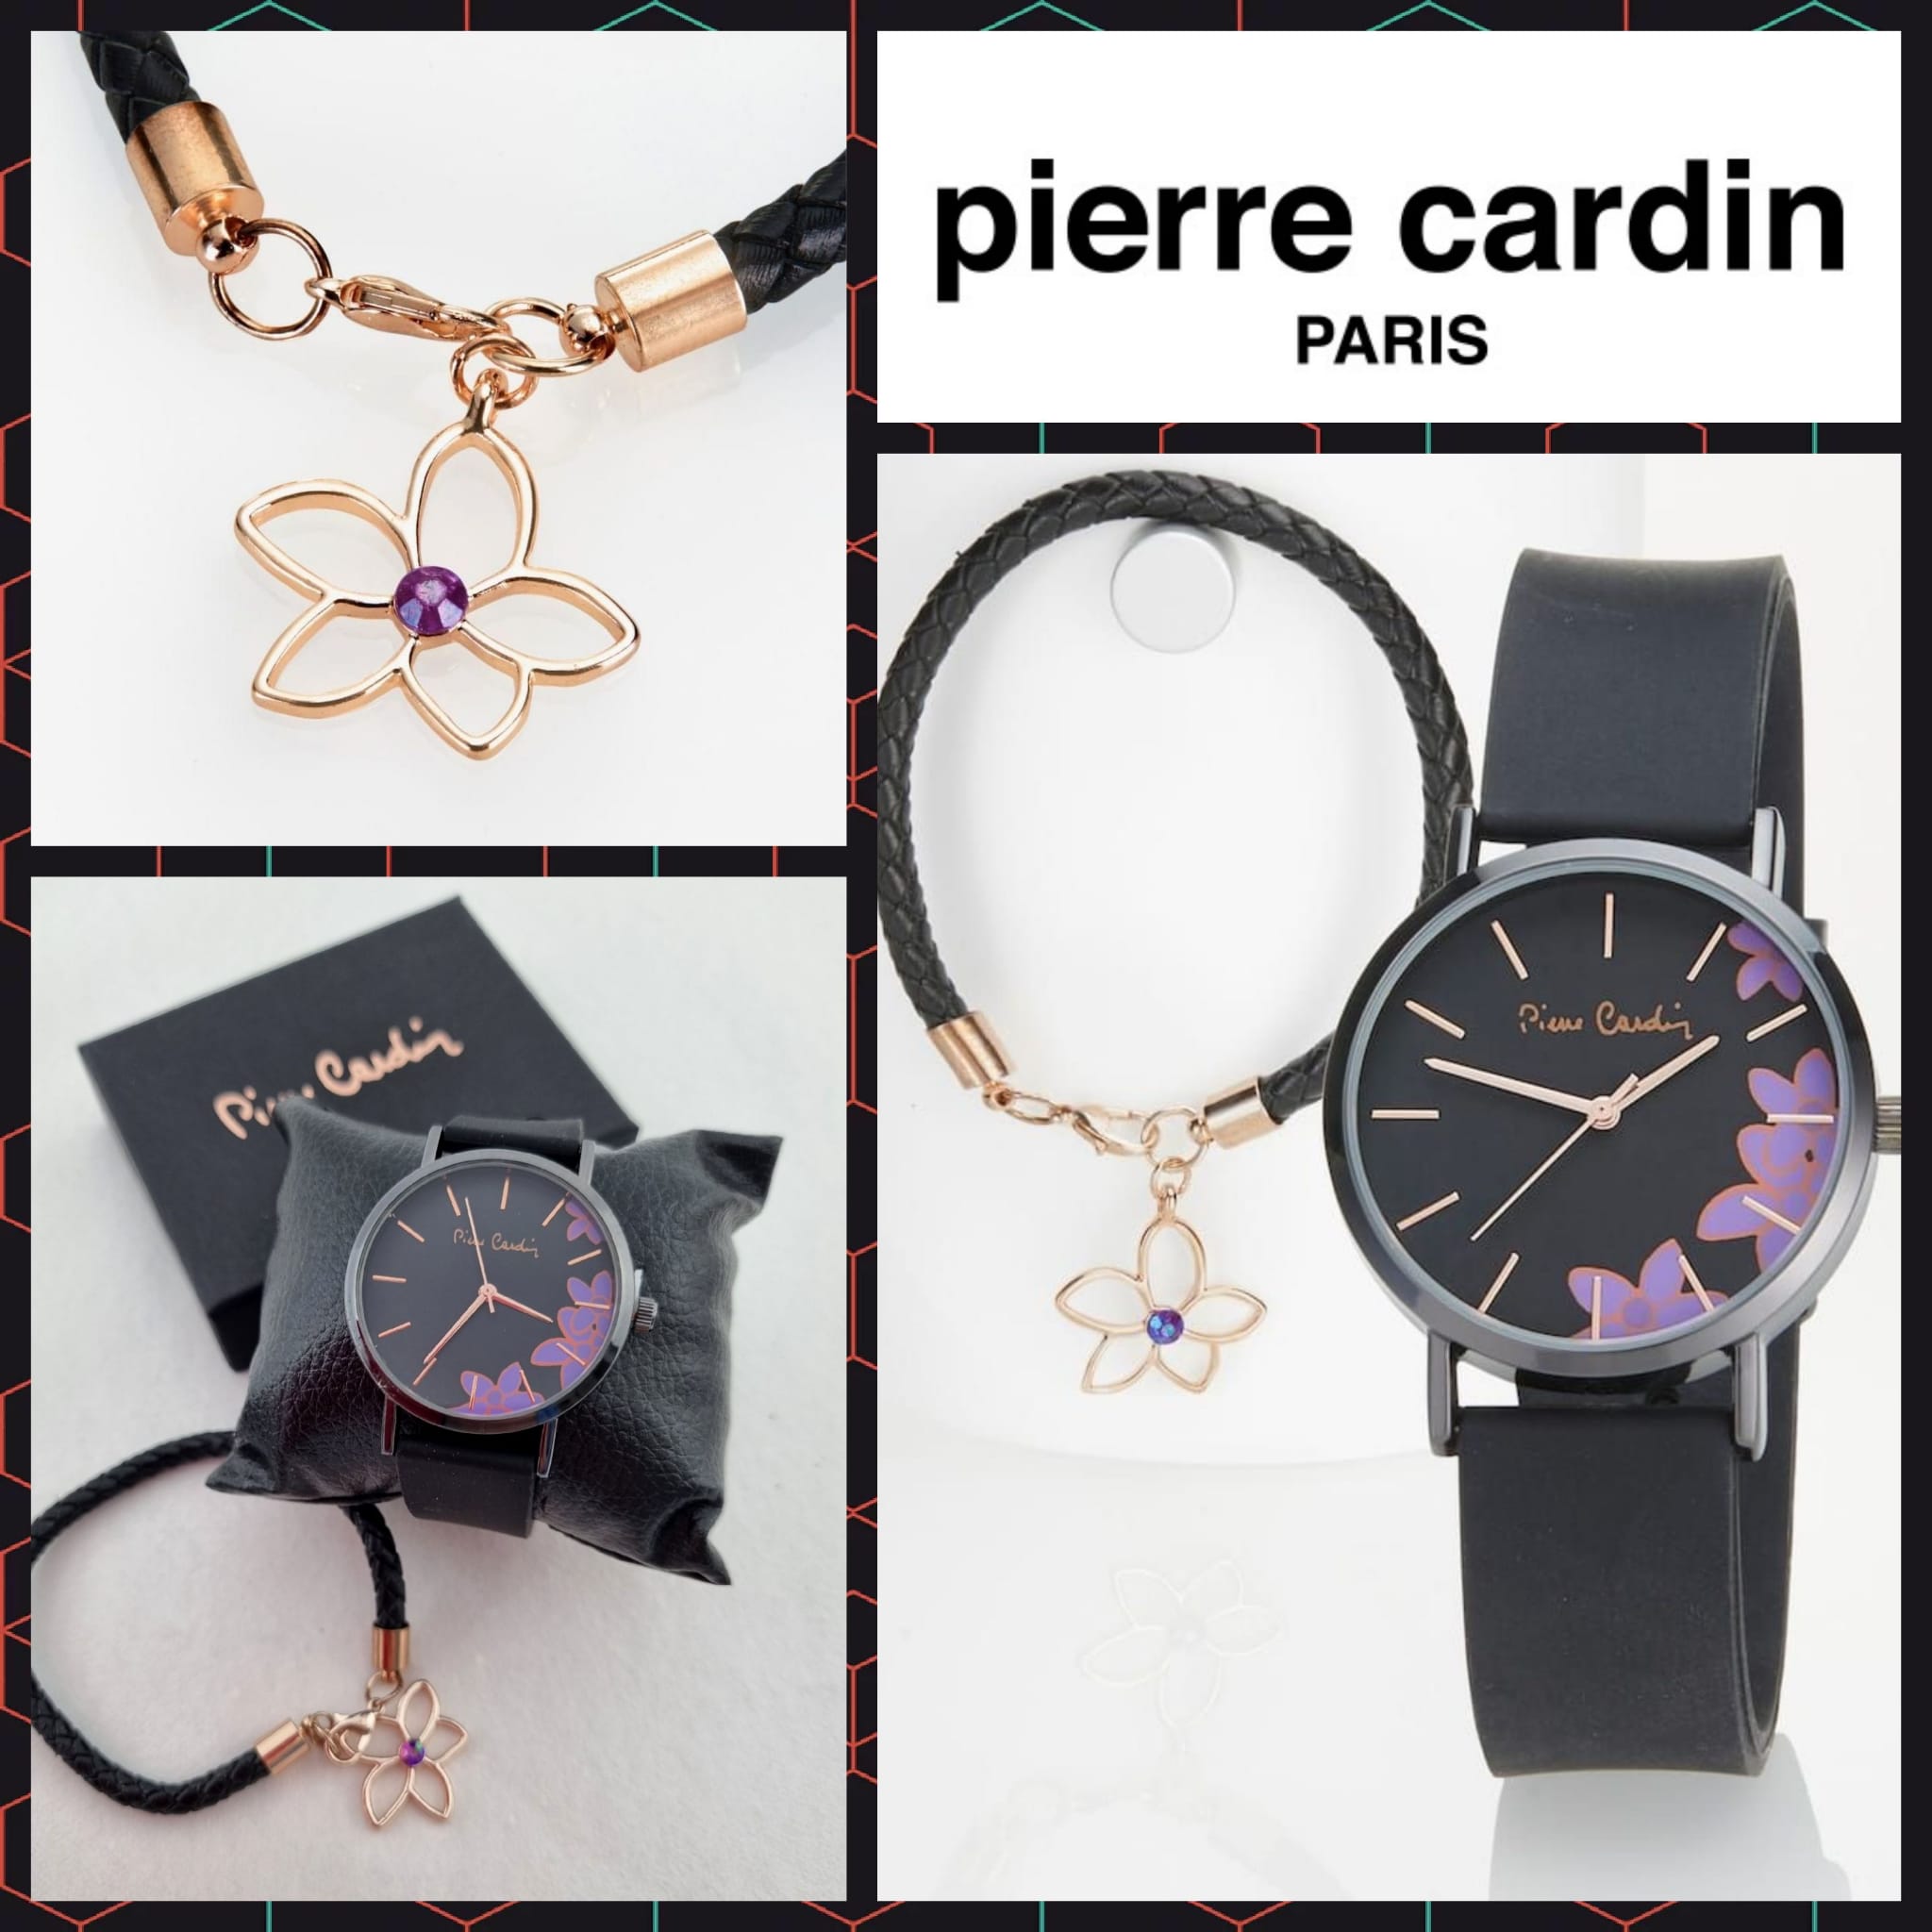 Women's watch with bracelet by Pierre Cardin